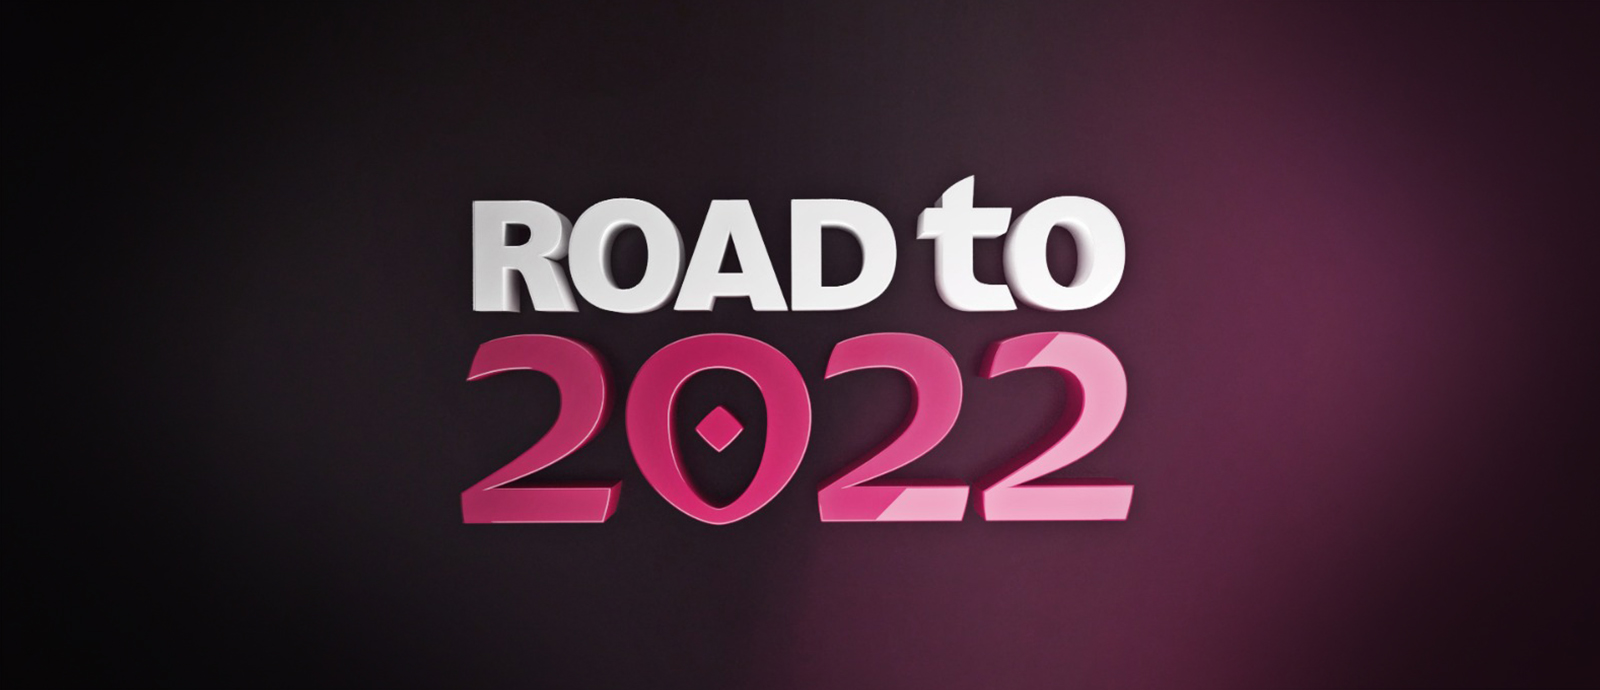 تيم كاهيل ضيفا على برنامج الطريق إلى 2022